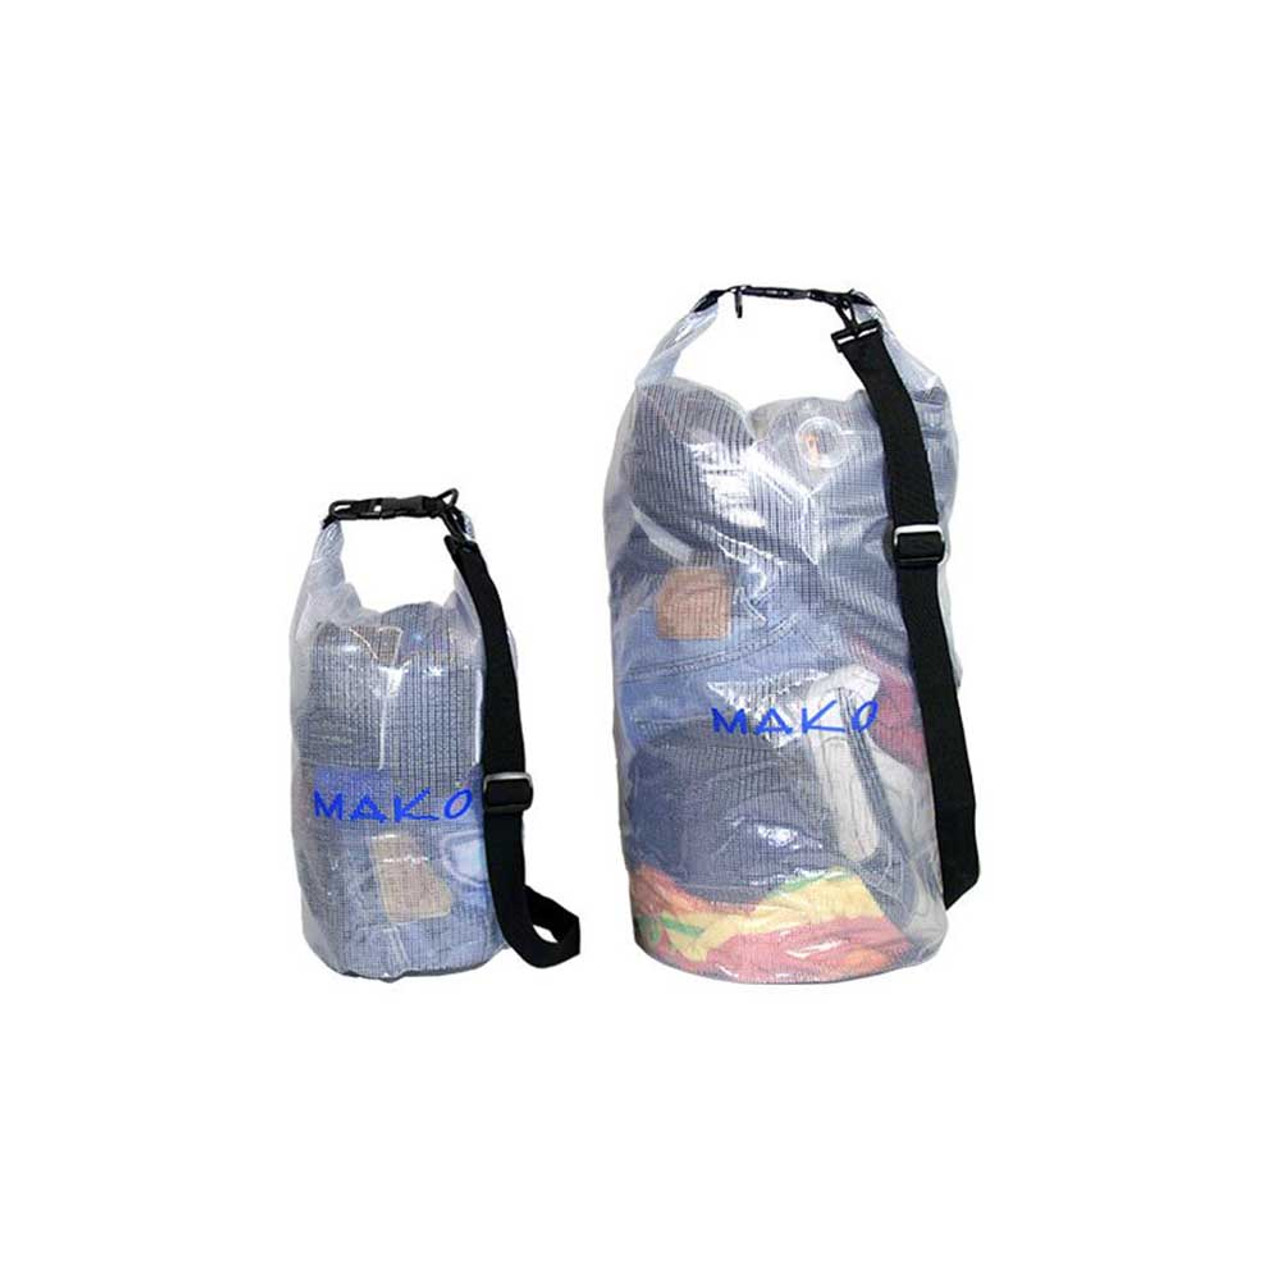 Waterproof Bag - Transparent